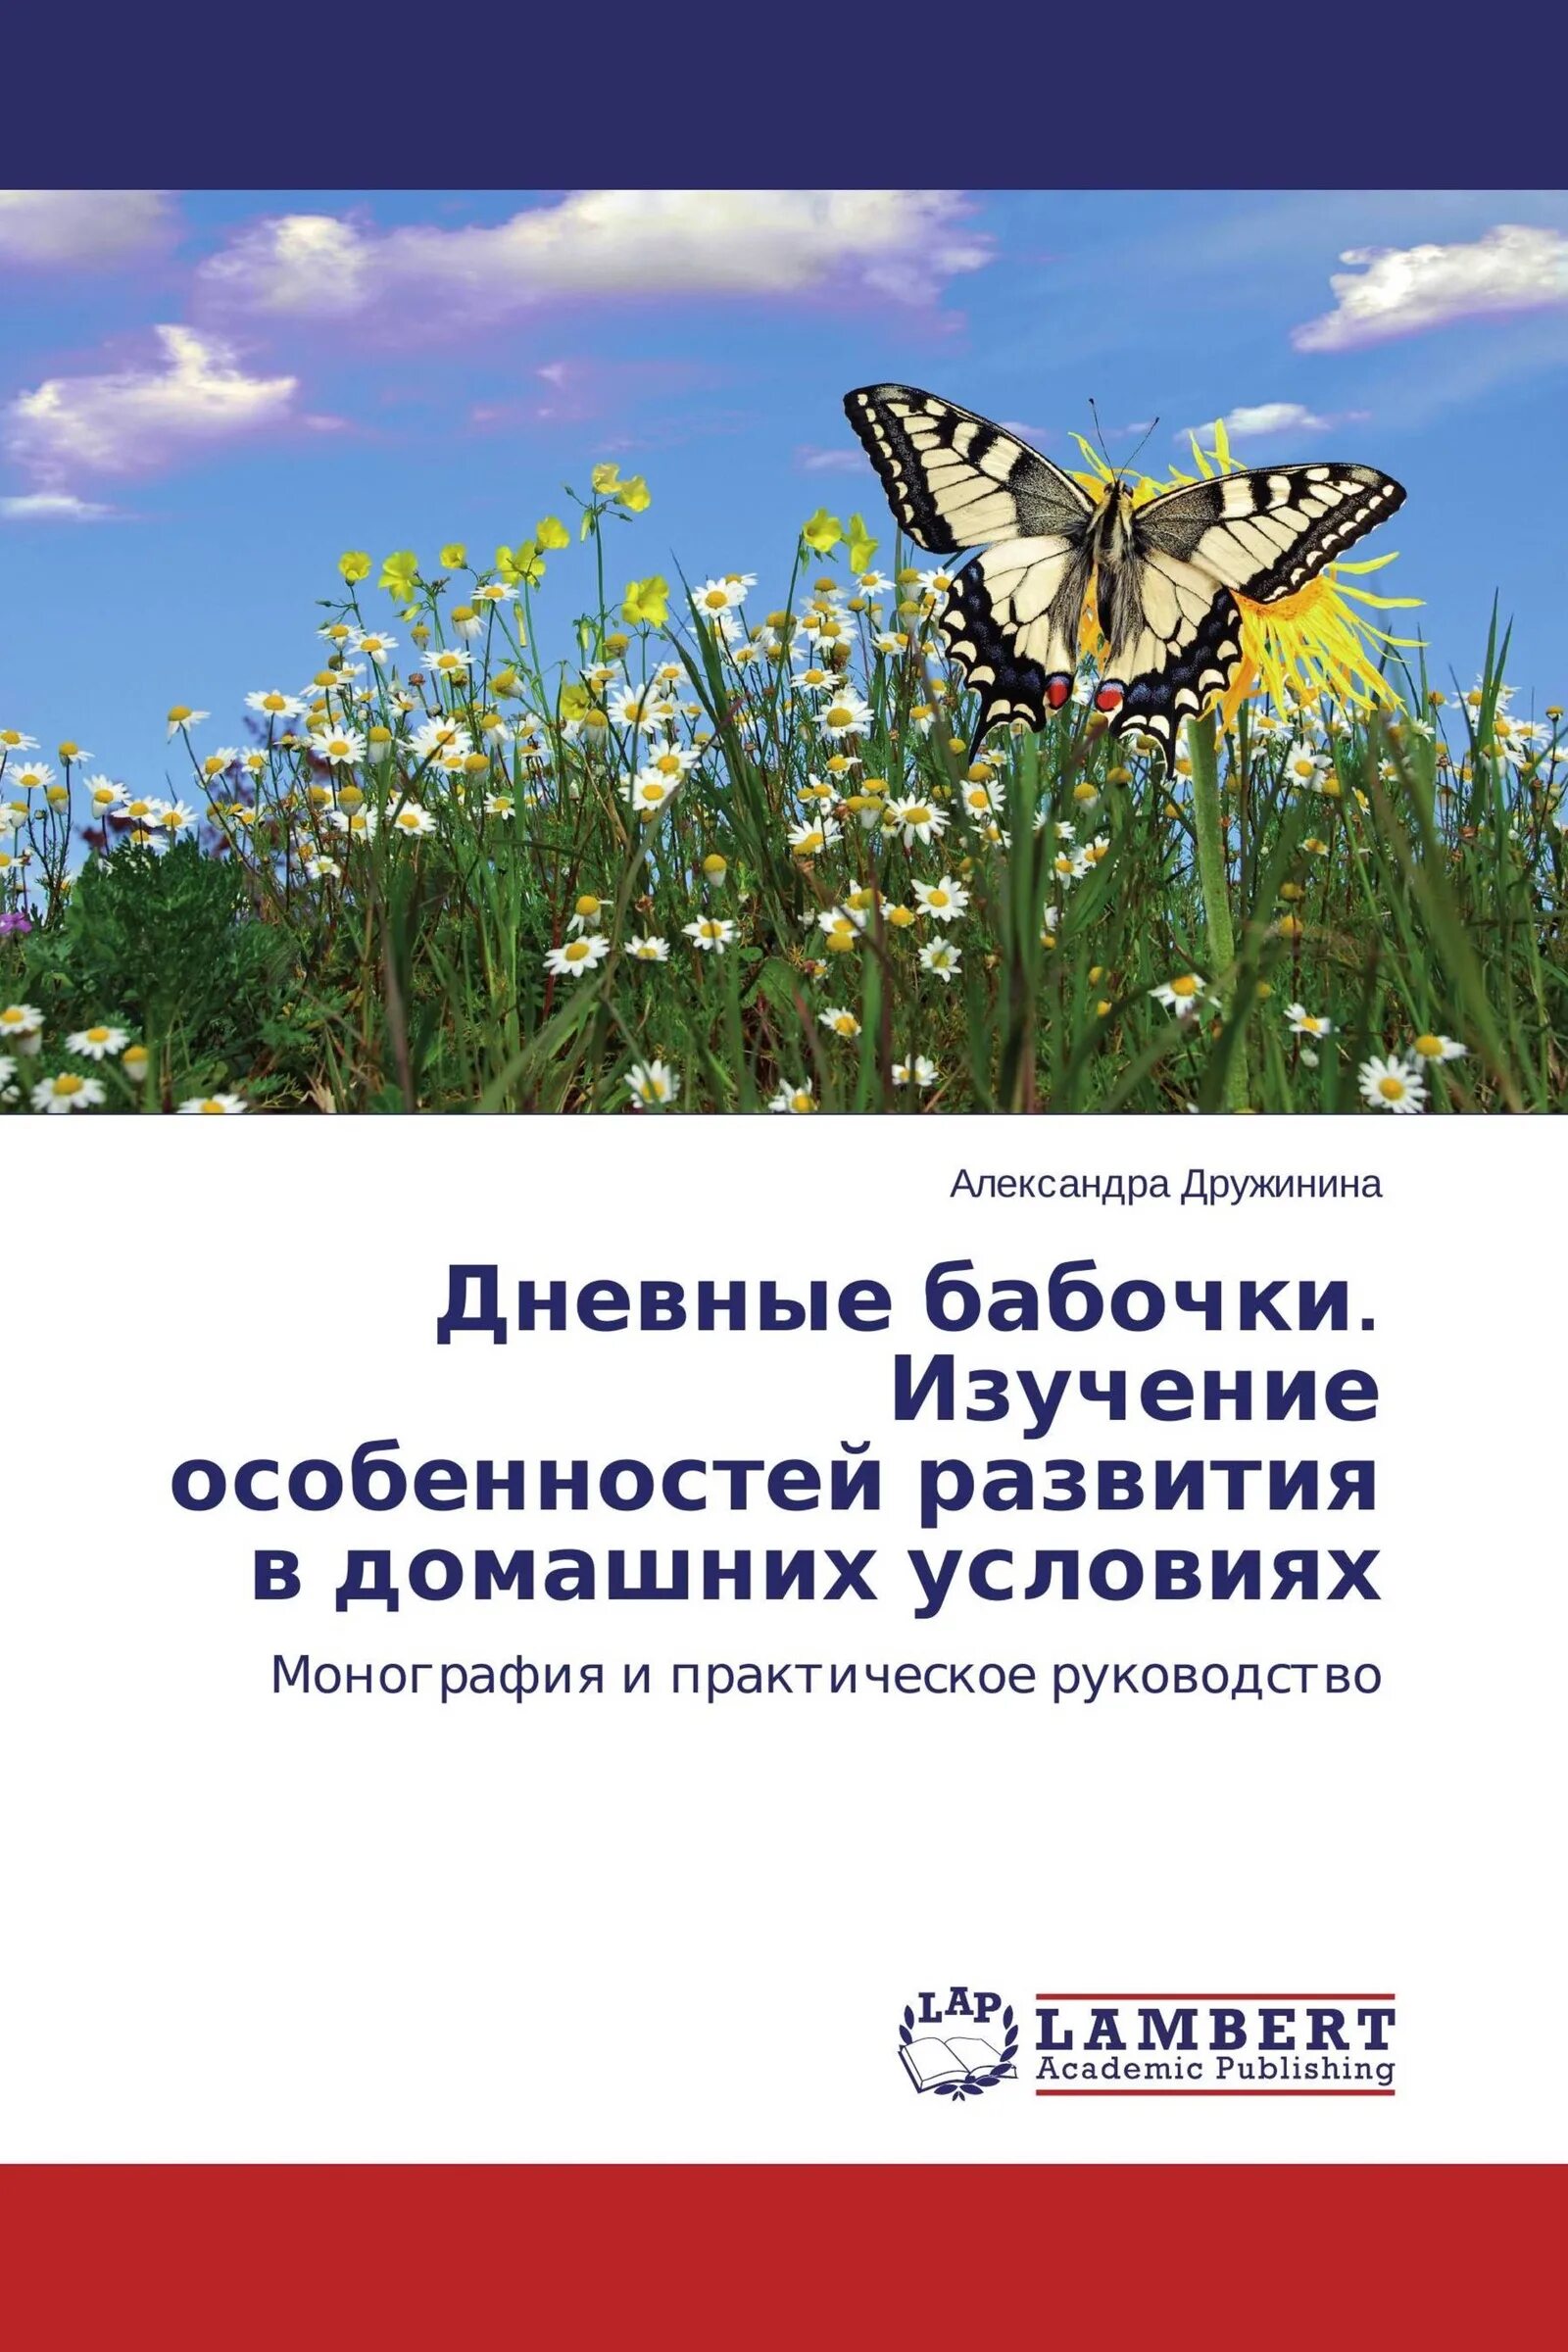 Книга о разведении бабочек. День изучения бабочки 14. День изучения бабочки